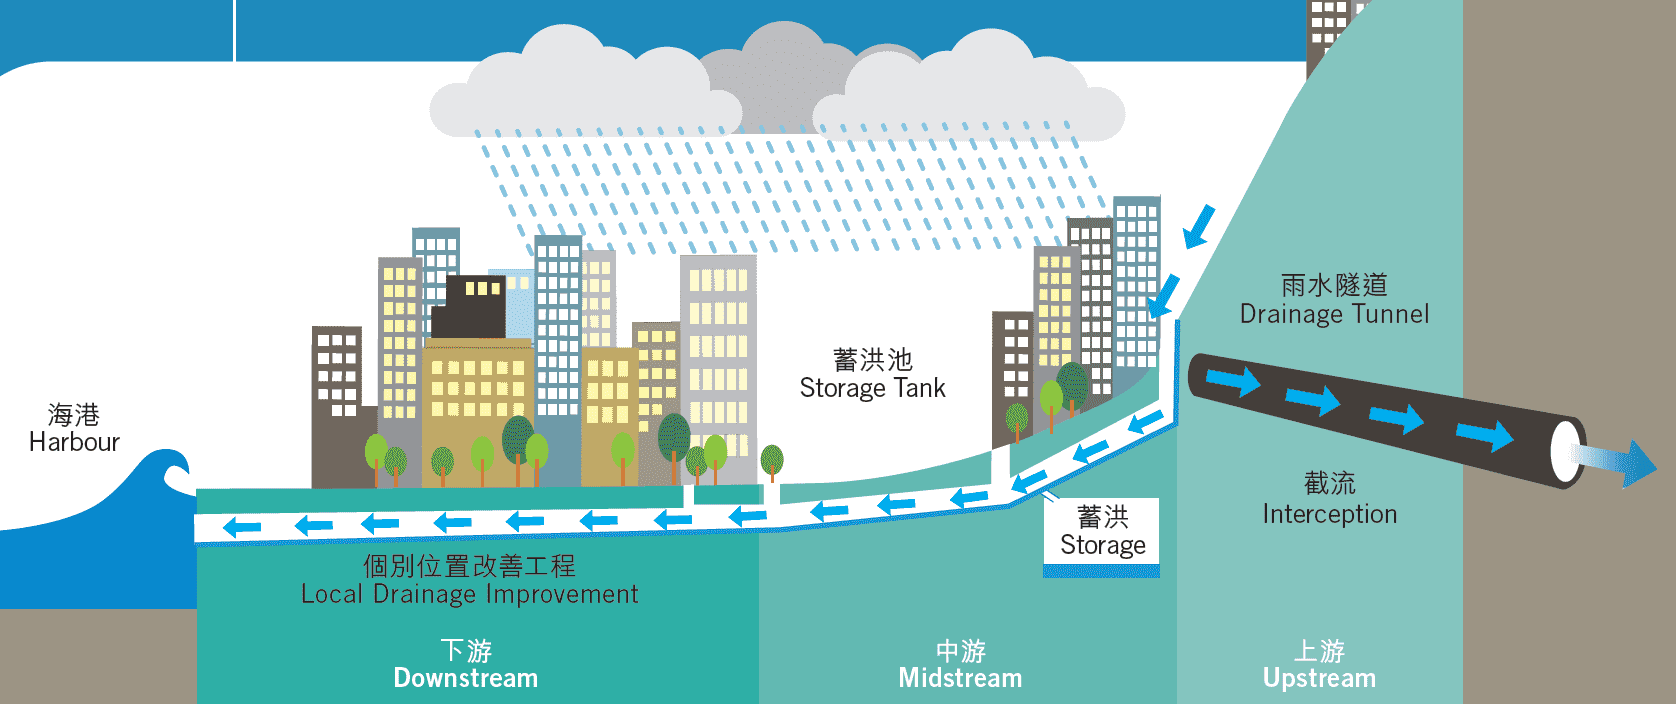 興建基礎設施減低大雨事件中市區水浸的風險